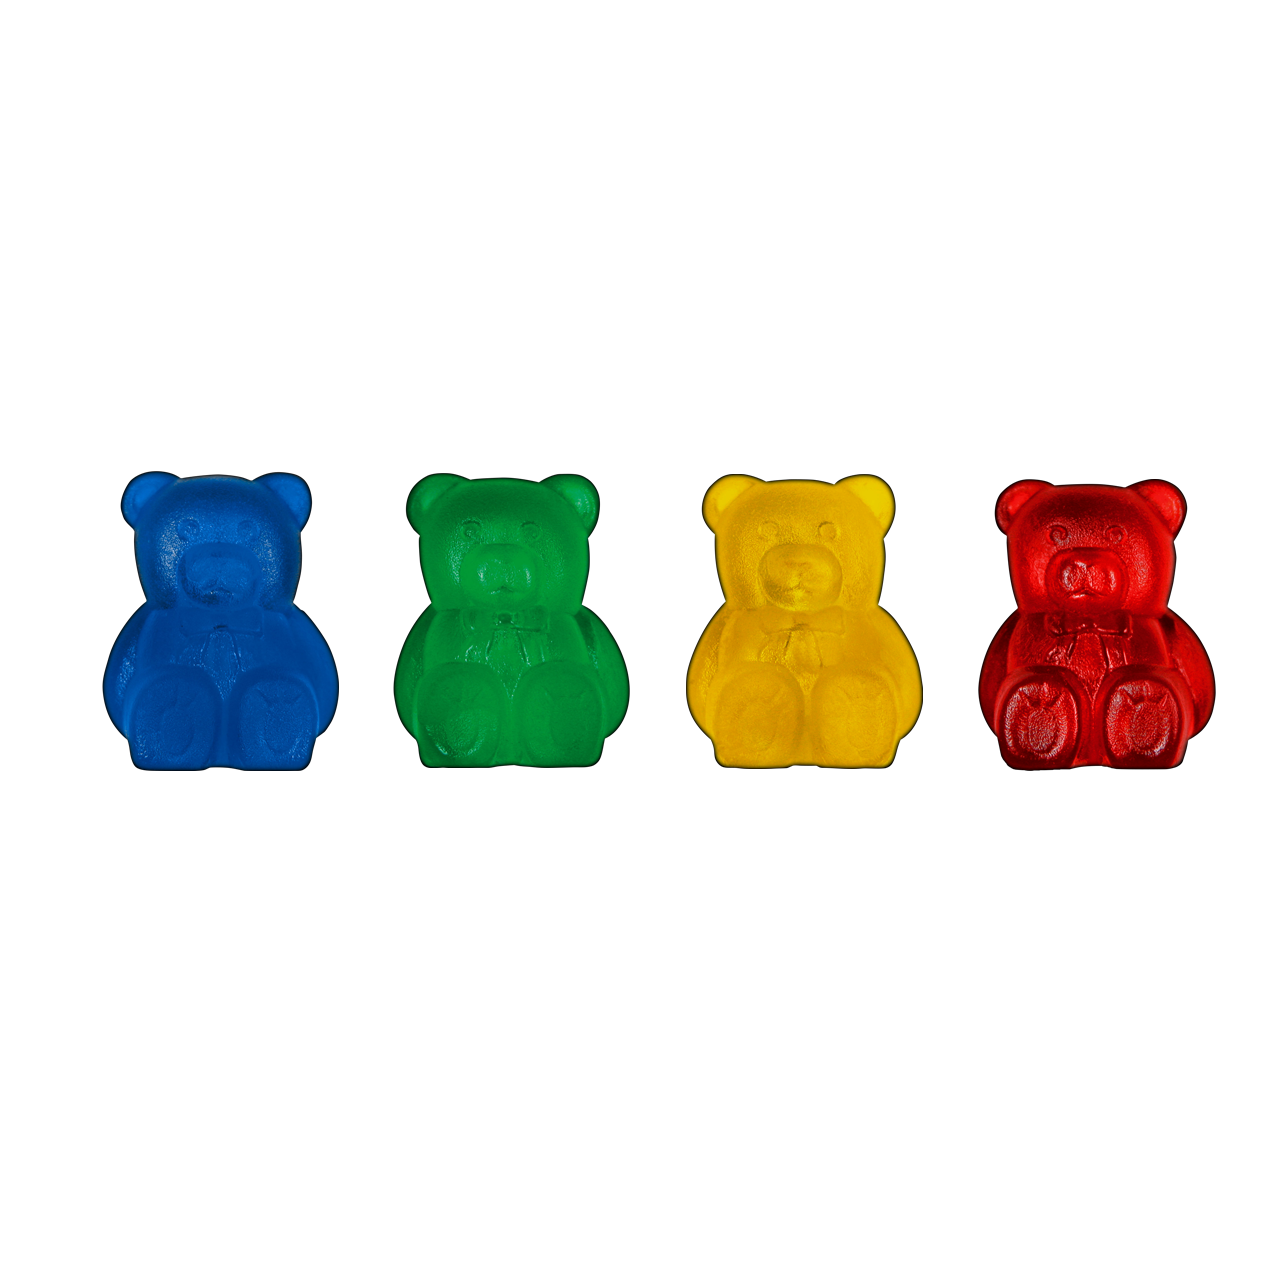 Maschenbären für Strumpfstricknadeln 2,5-5 mm 2,50-5,00 mm 8 Stück